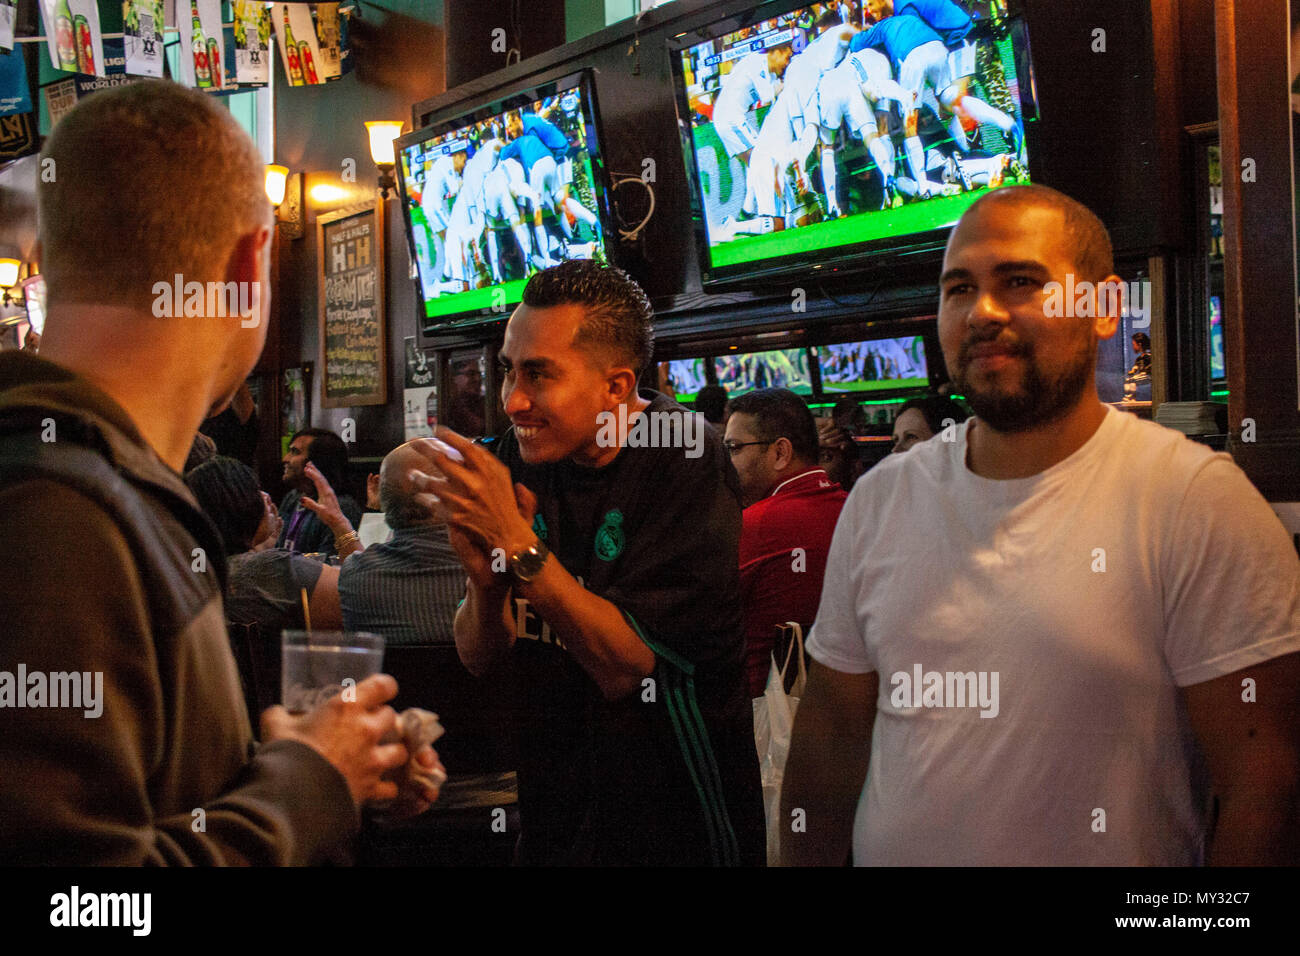 Liverpool & Real Madrid tifosi guardare la finale di Champions League a Dublino's Bar, Centro di Los Angeles. Foto Stock